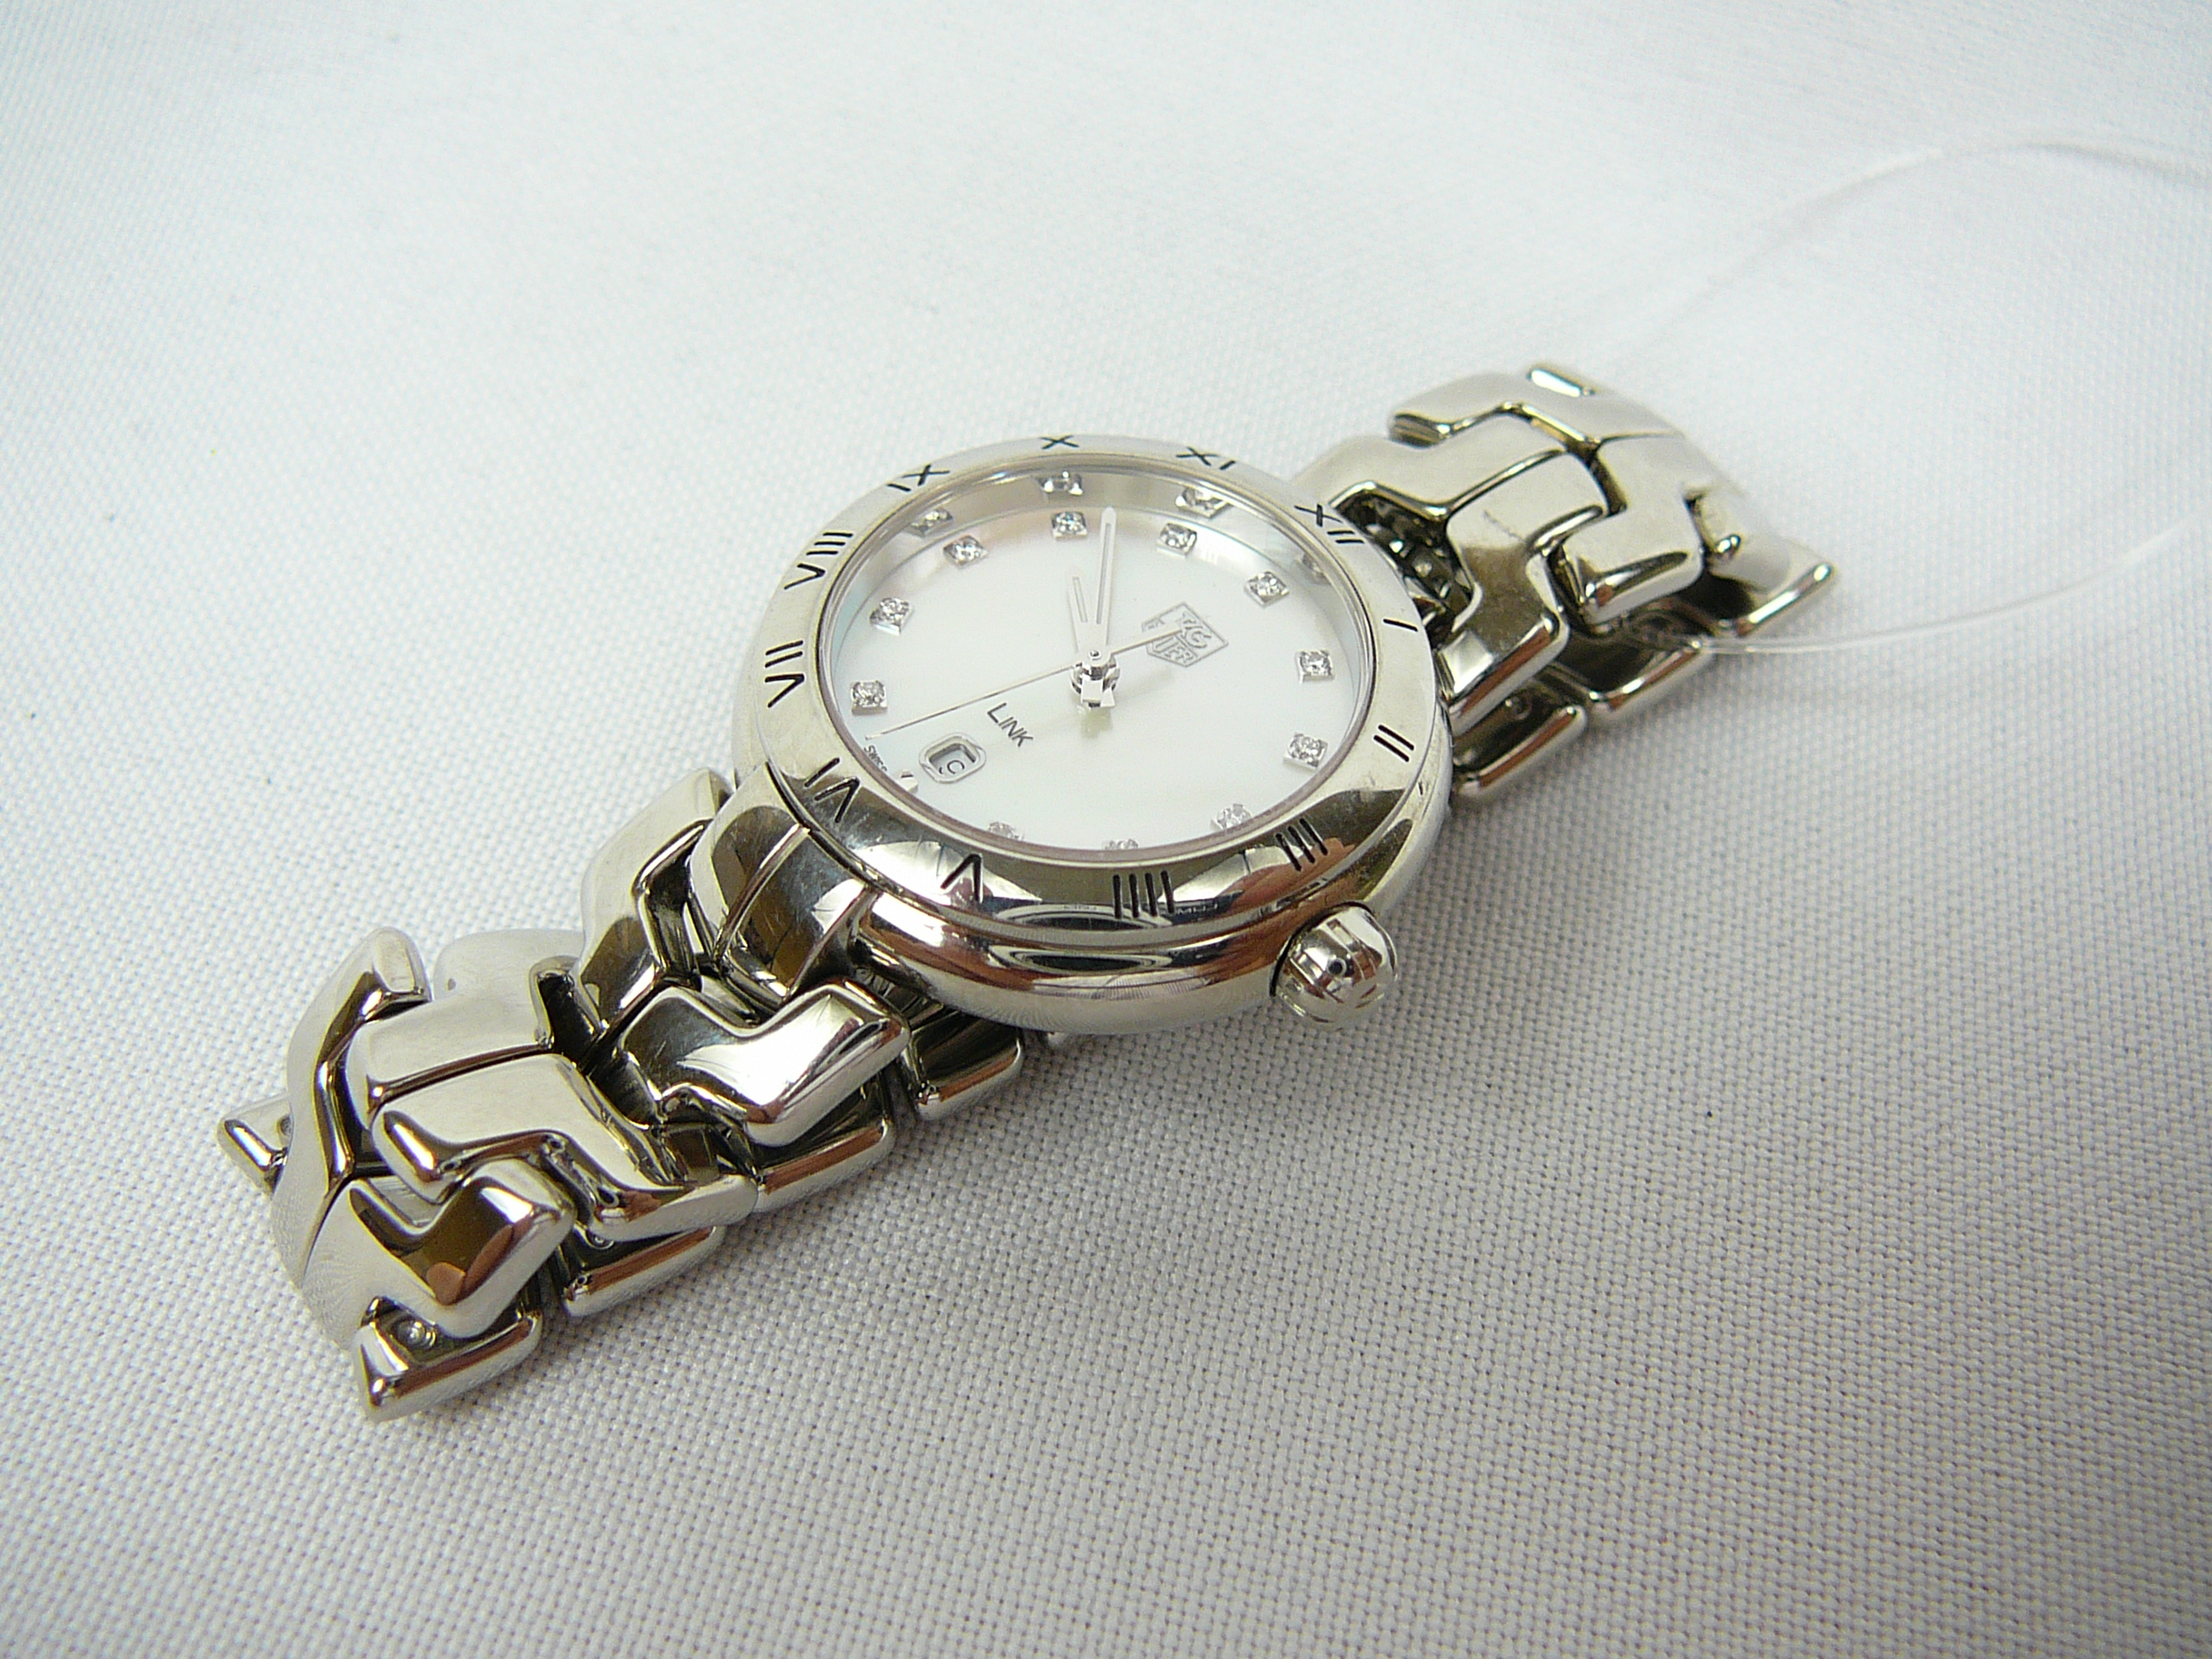 Ladies Tag Heuer wrist watch - Image 2 of 3